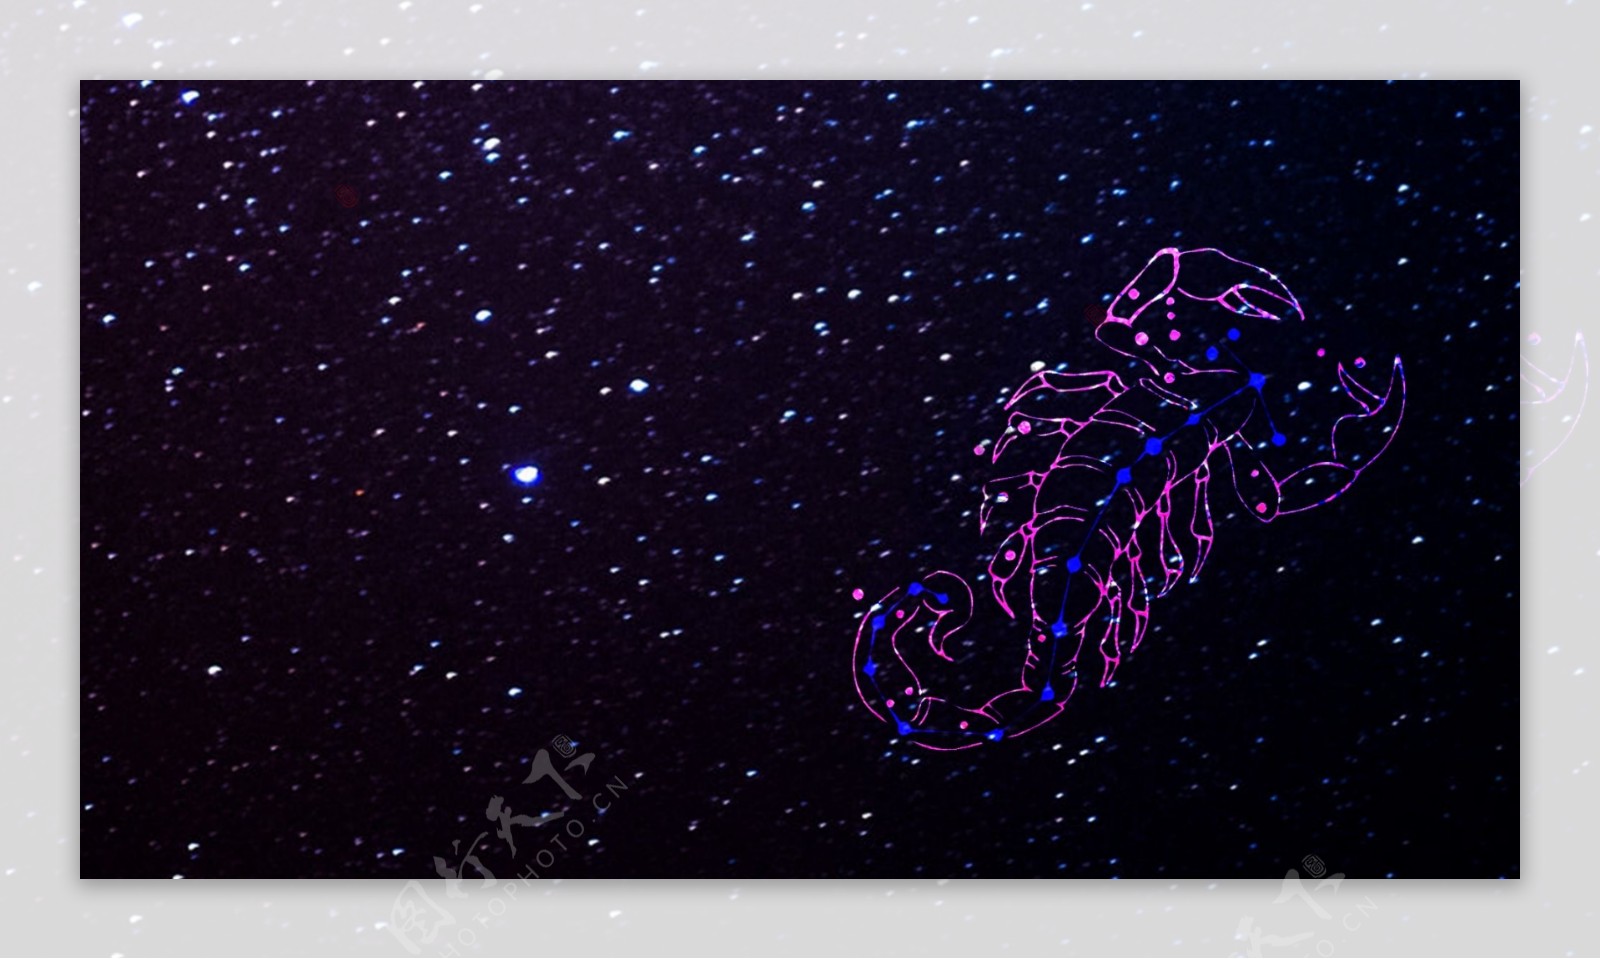 12星座天蝎座唯美插画手机壁纸_手机壁纸_mm4000图片大全